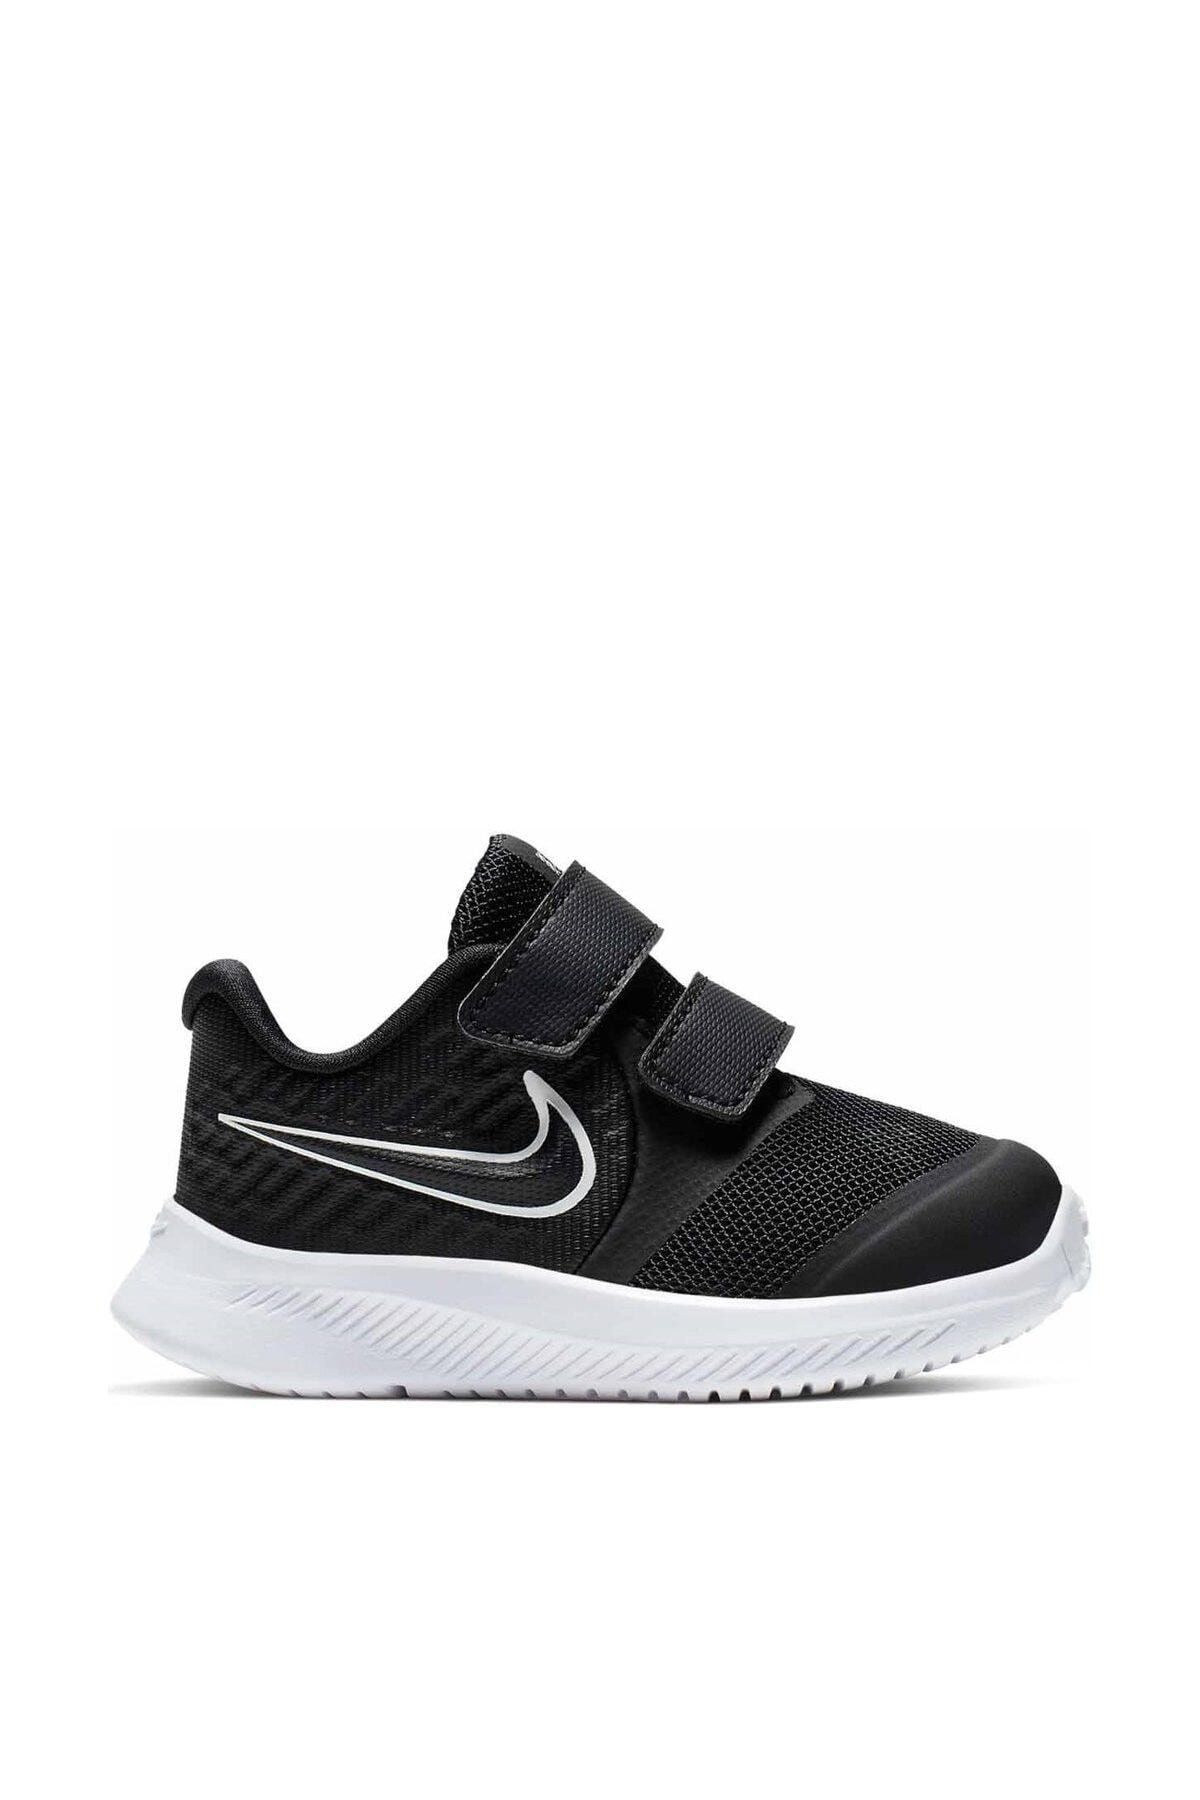 Nike Çocuk Star Runner 2 (Tdv) Yürüyüş Koşu Ayakkabısı